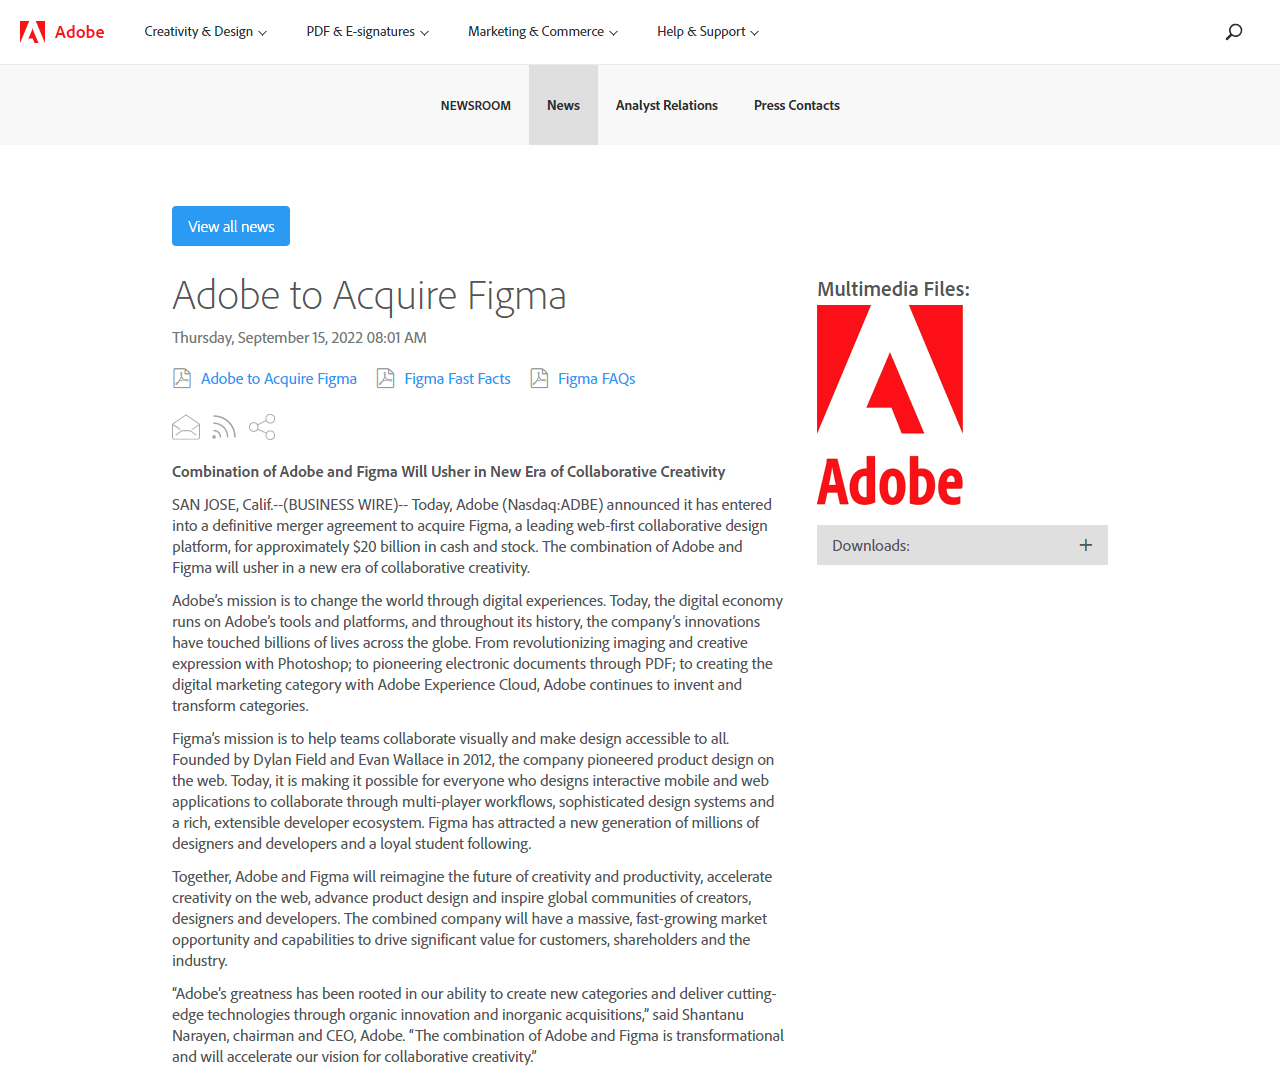 Adobe to acquire Figma in 2022